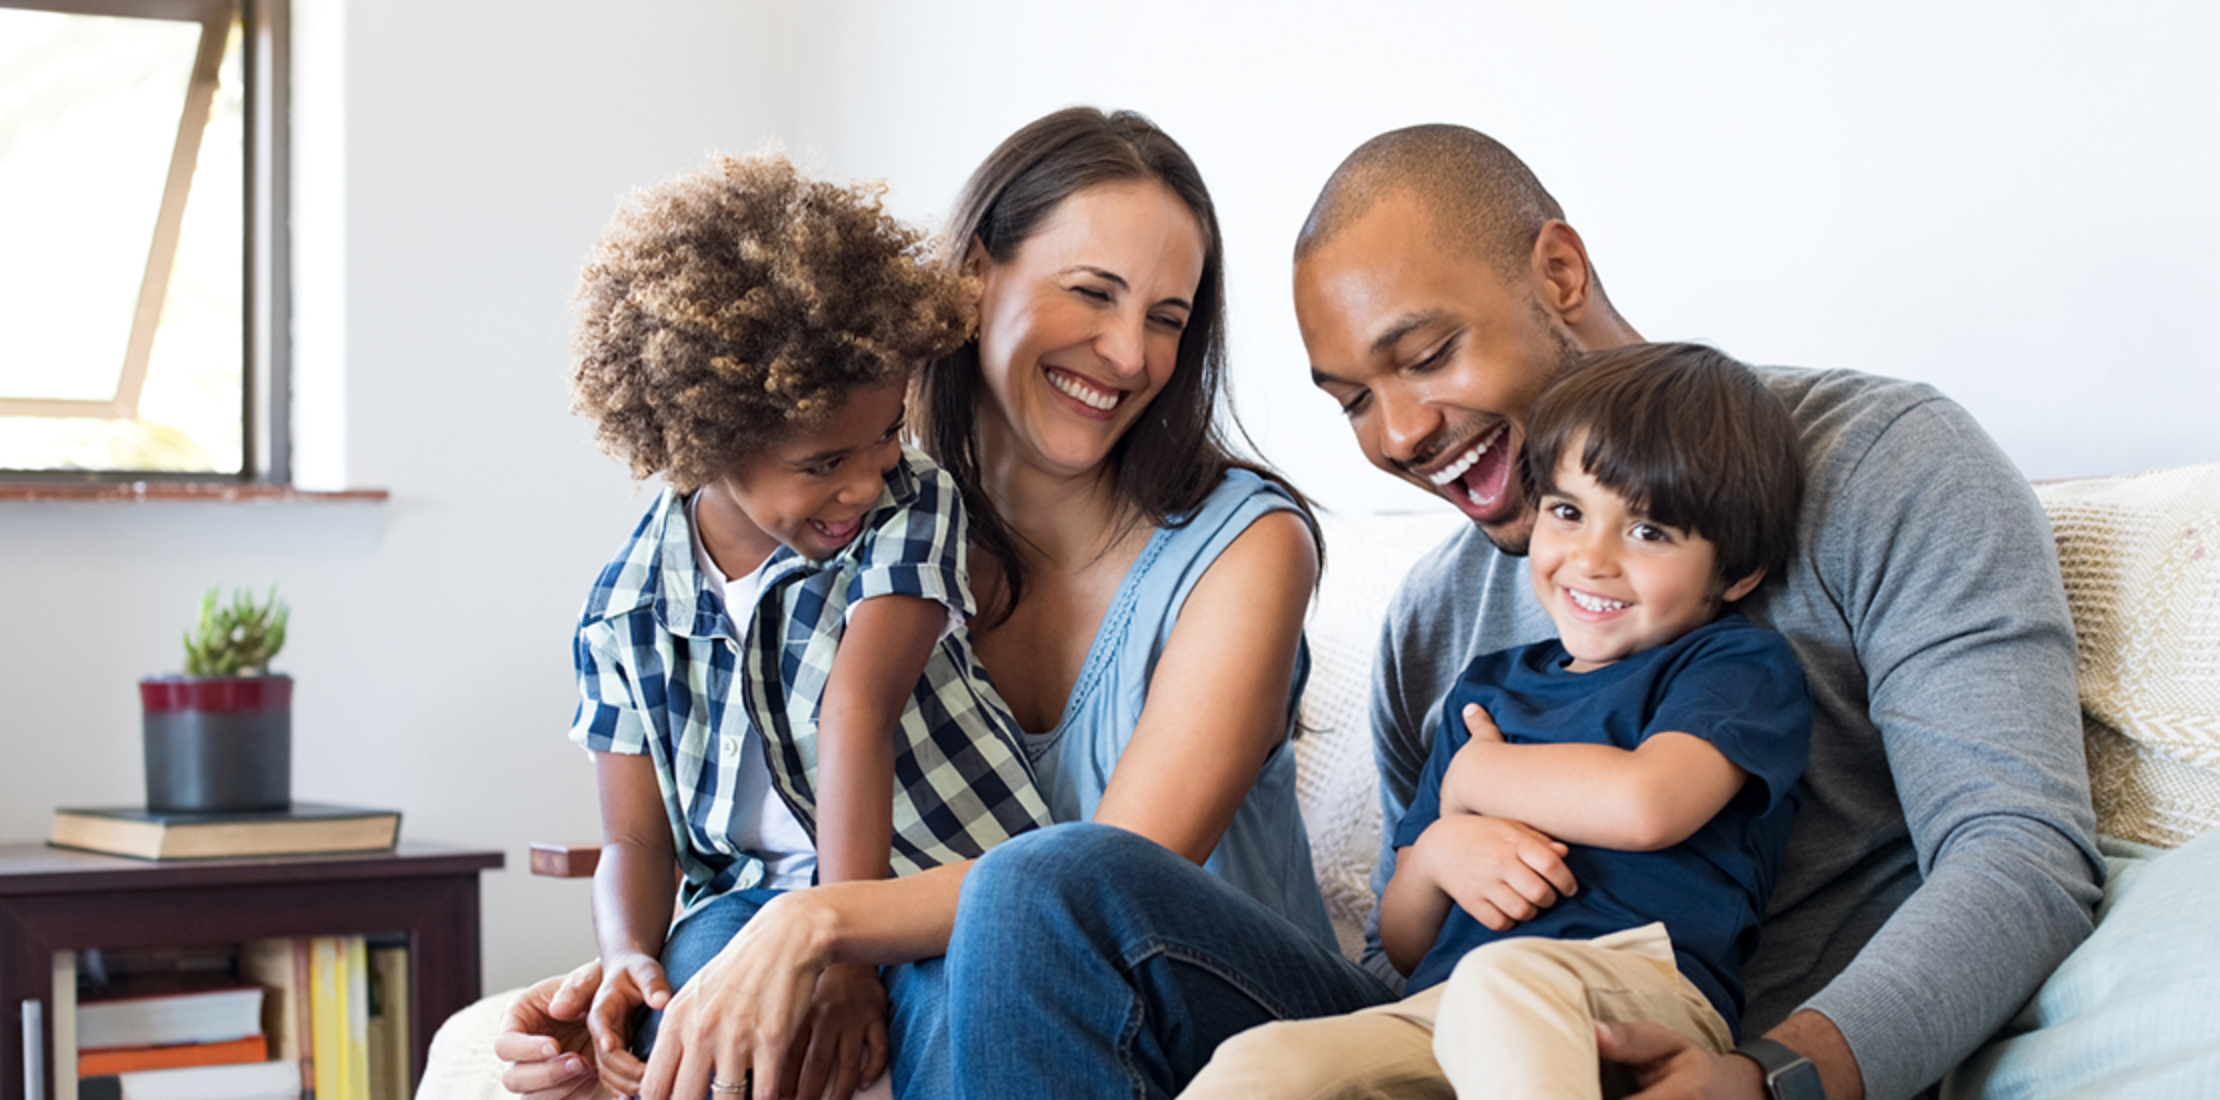 Imagen 5 principios básicos de las finanzas familiares